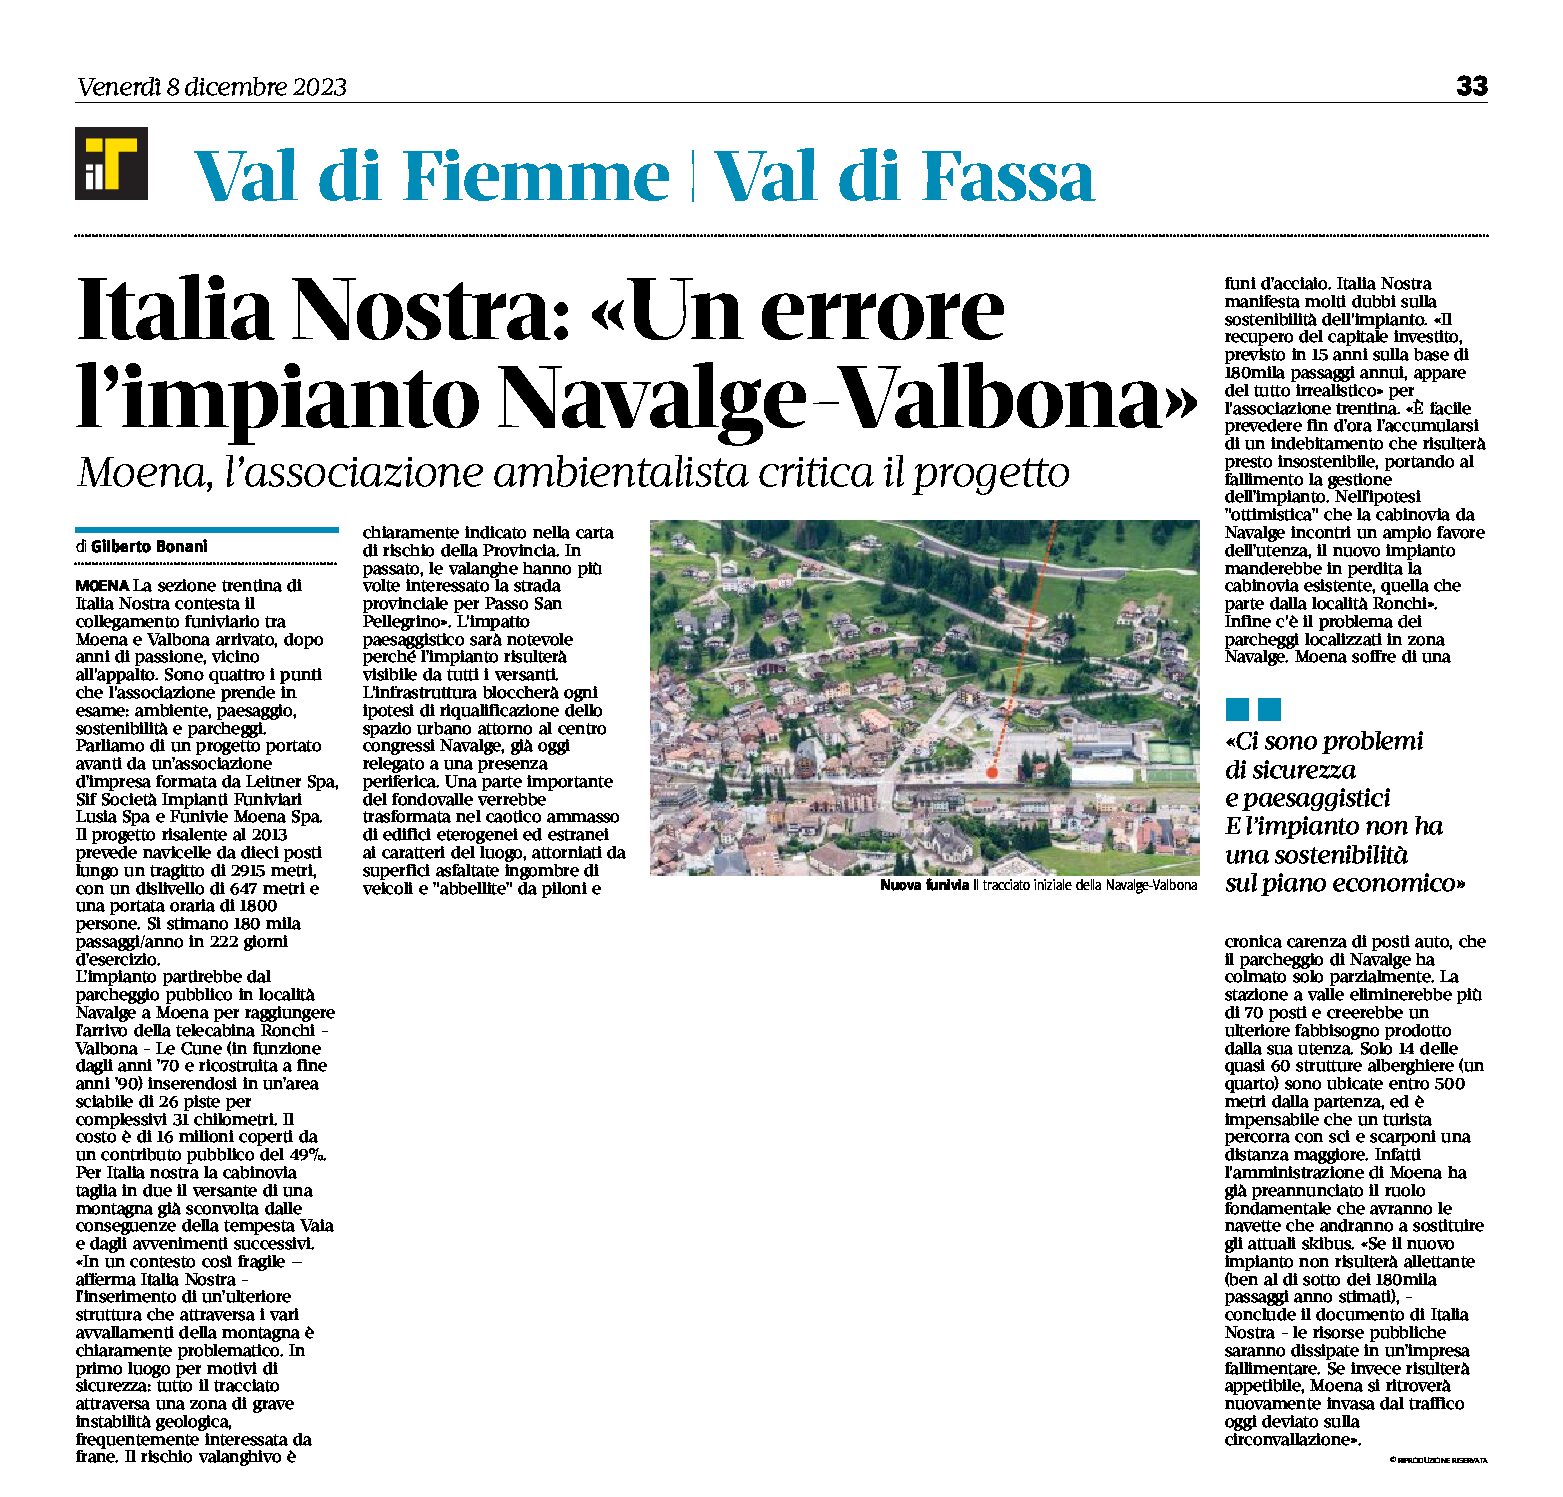 Moena: Italia Nostra critica il progetto dell’impianto Navalge-Valbona